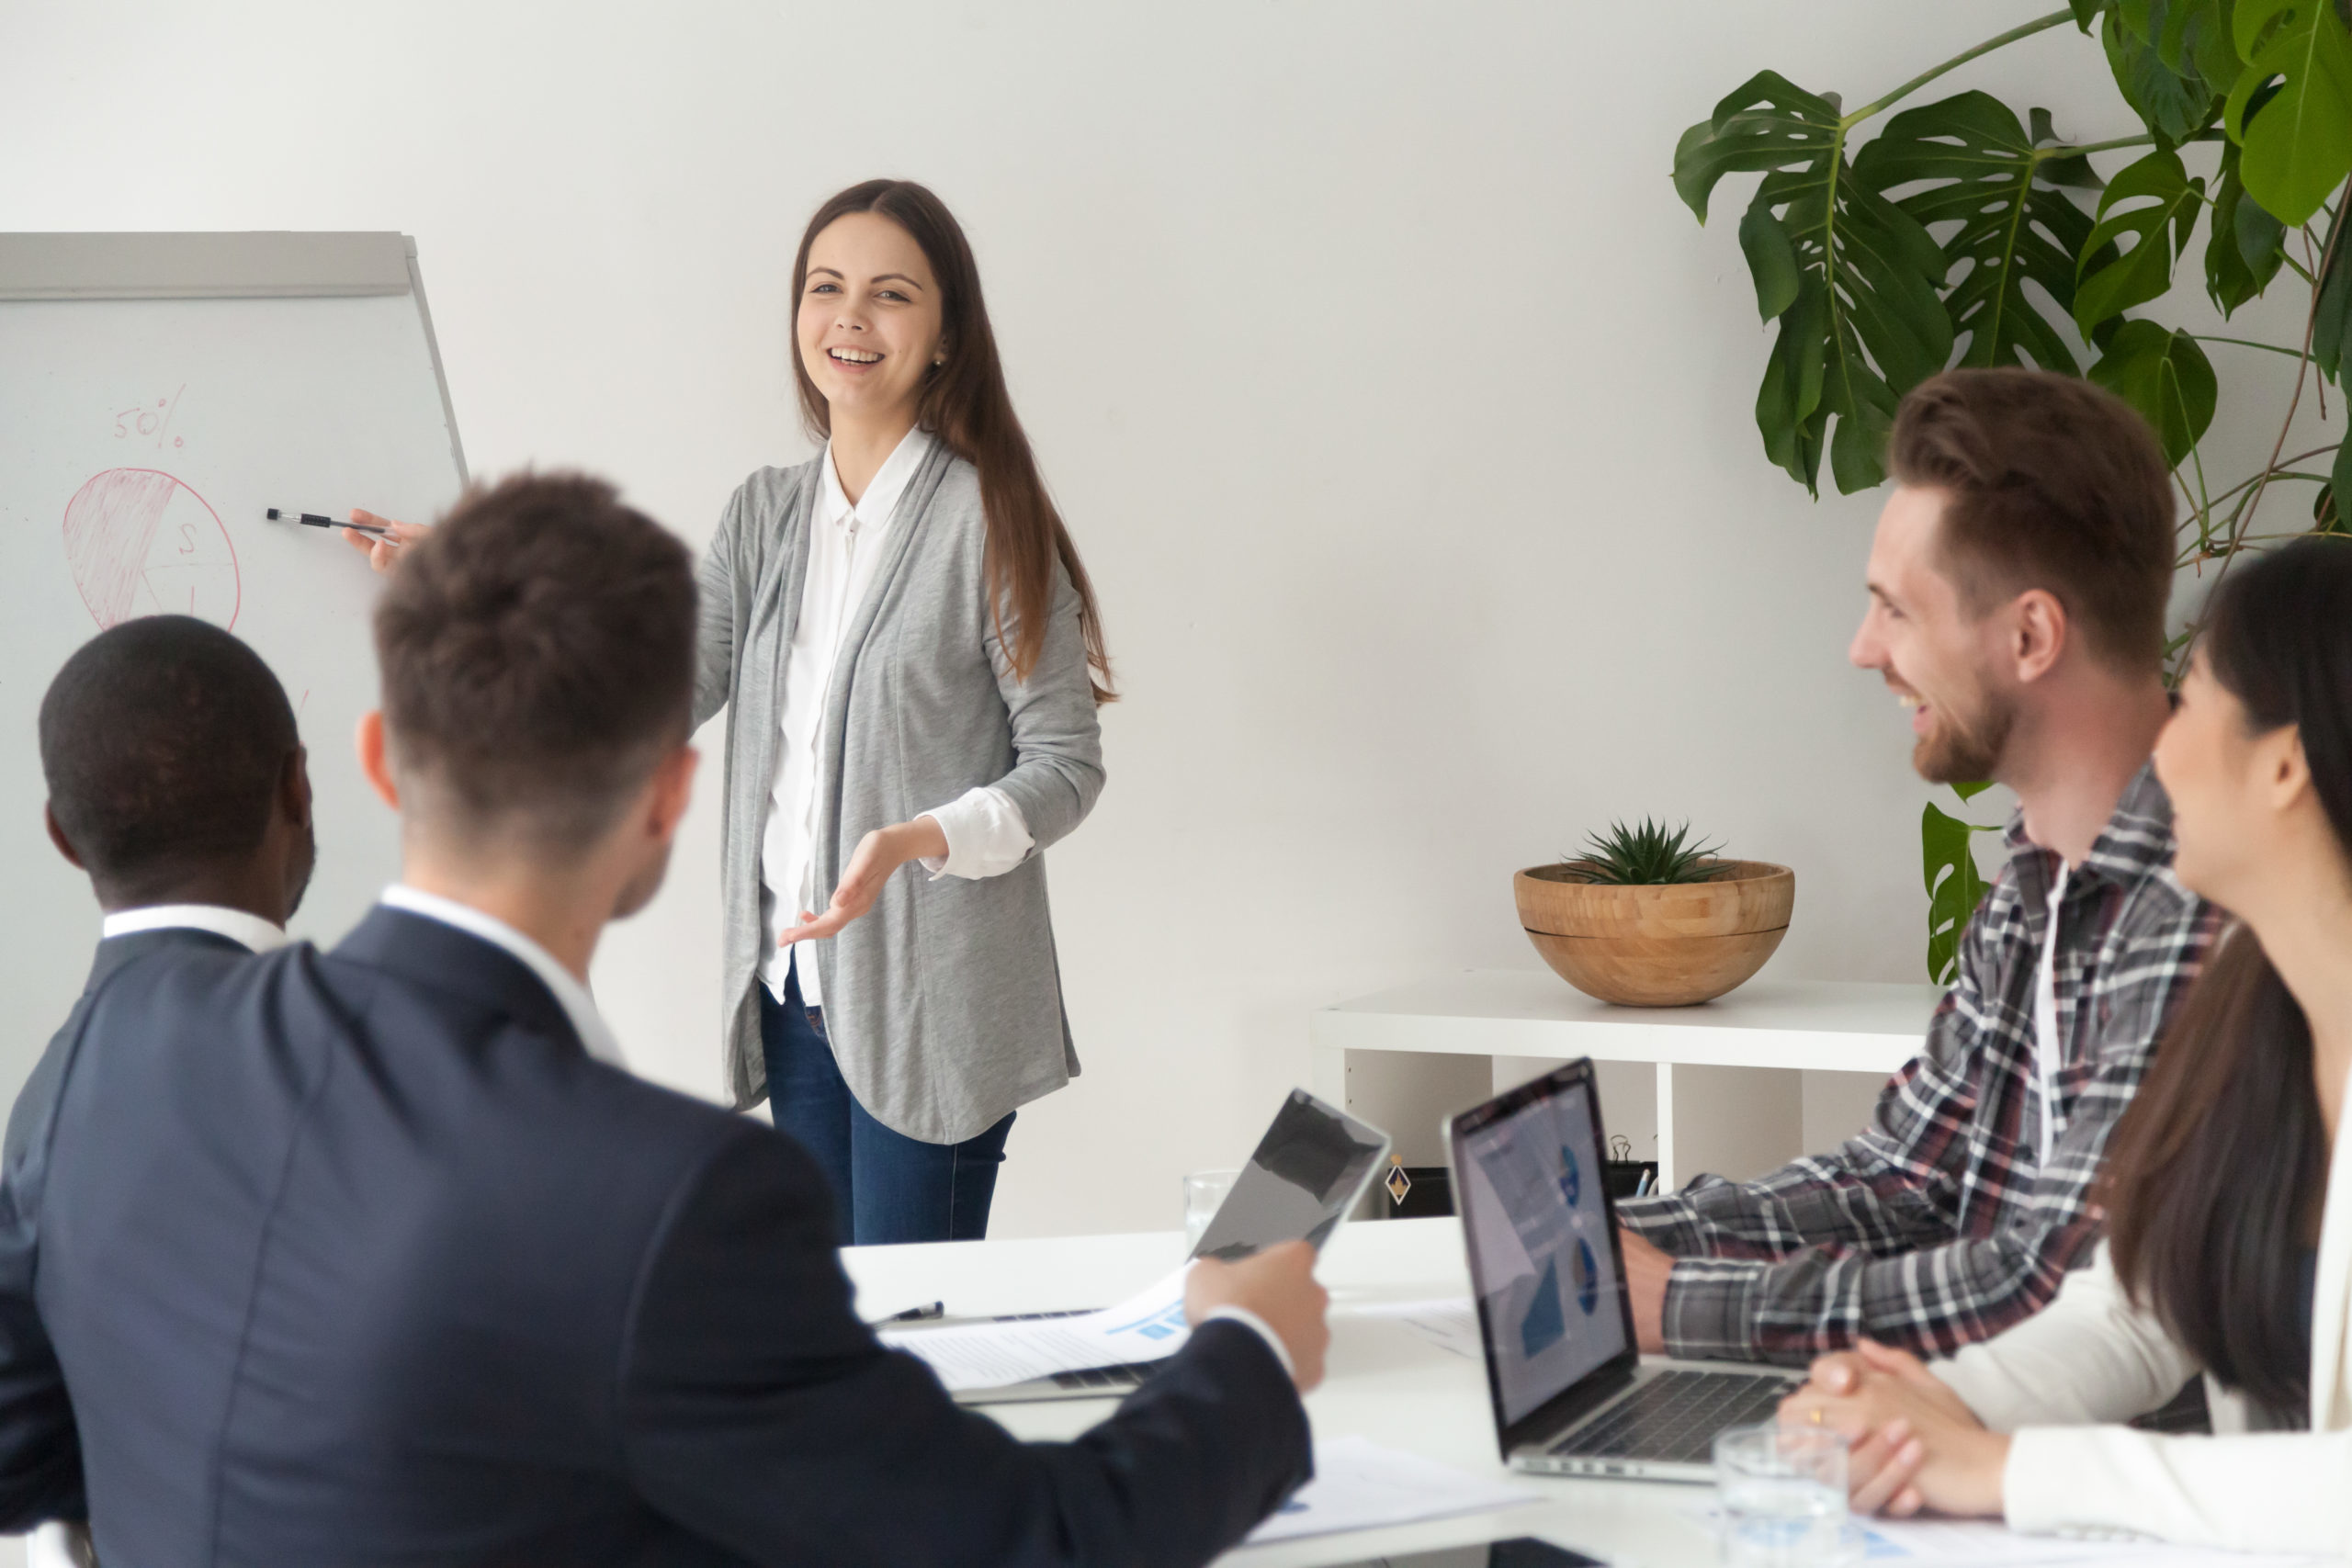 lachende jonge medewerker met lang bruin haar geeft een presentatie op een flipchart aan vier sales advisors